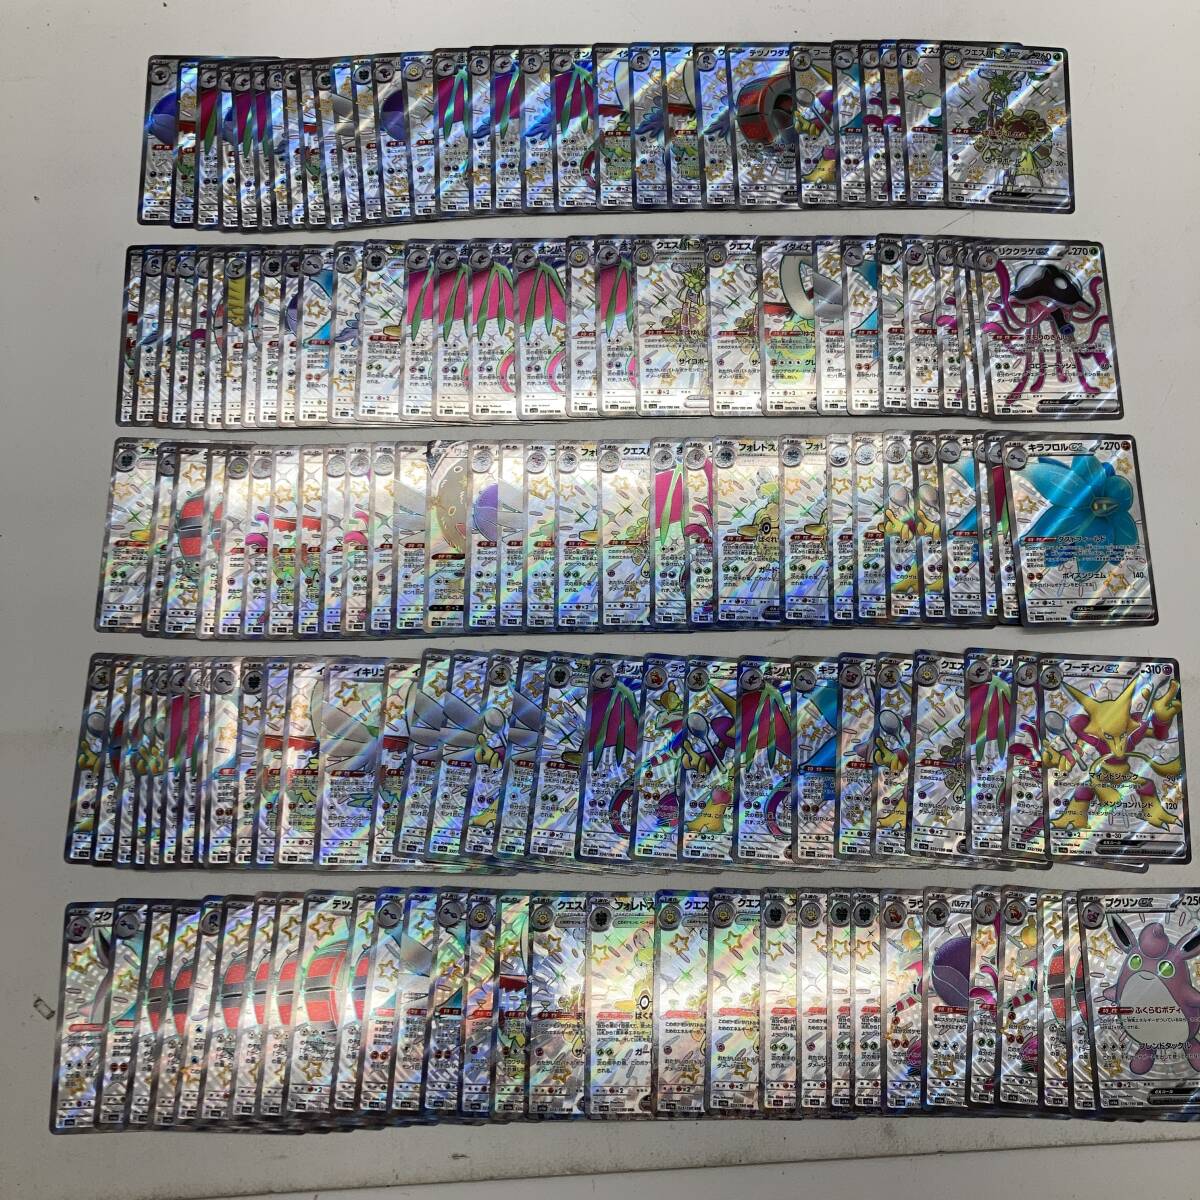 [1 иен ~] Pokemon карта SSR 150 шт. комплект pokeka коллекционные карточки kespa тигр exlik медуза expk Lynn exf- DIN ex др. [ б/у товар ]